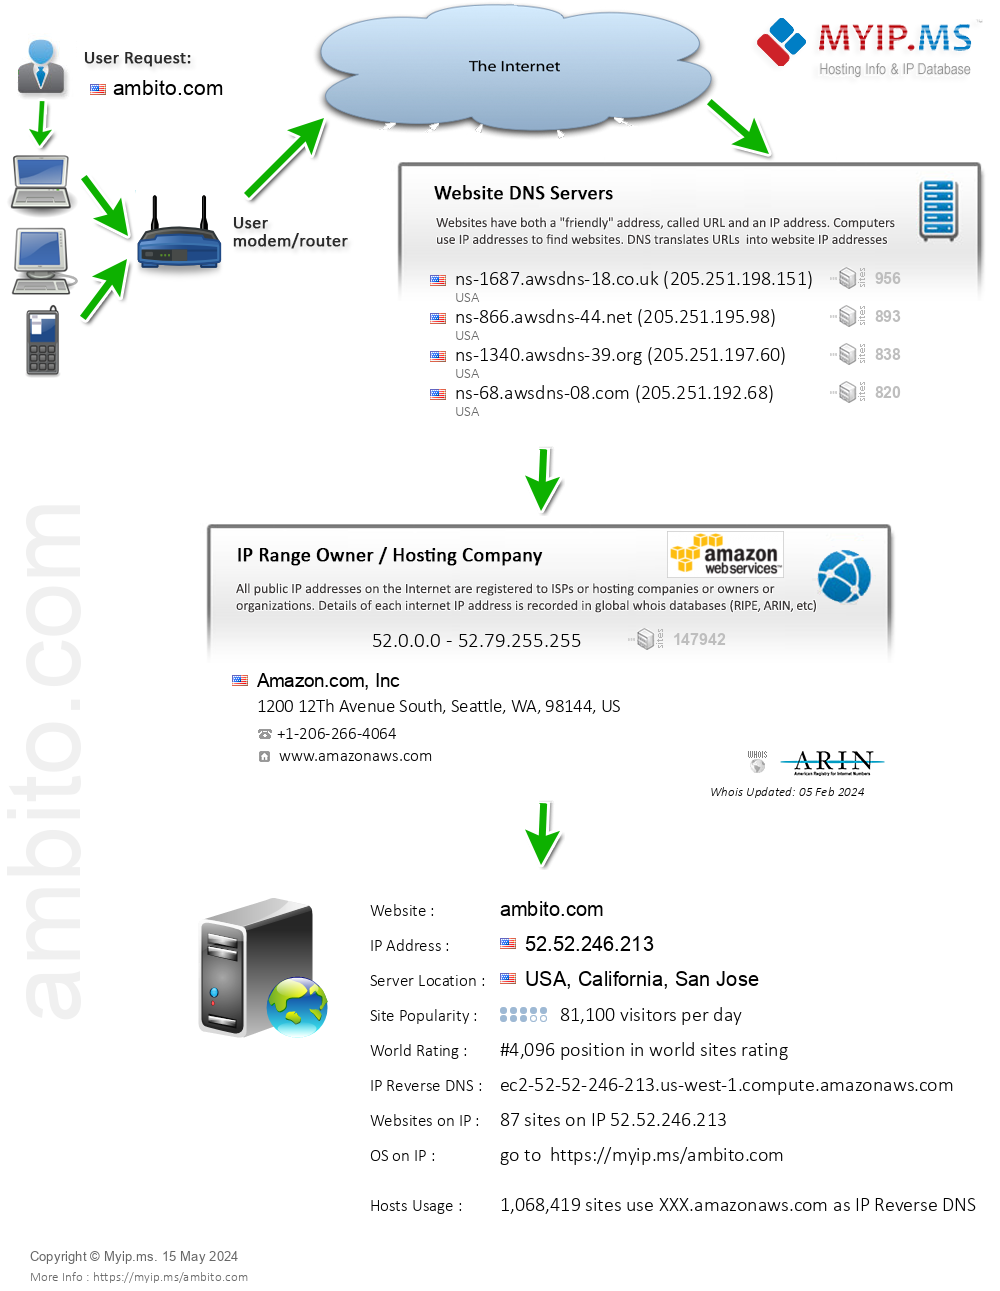 Ambito.com - Website Hosting Visual IP Diagram